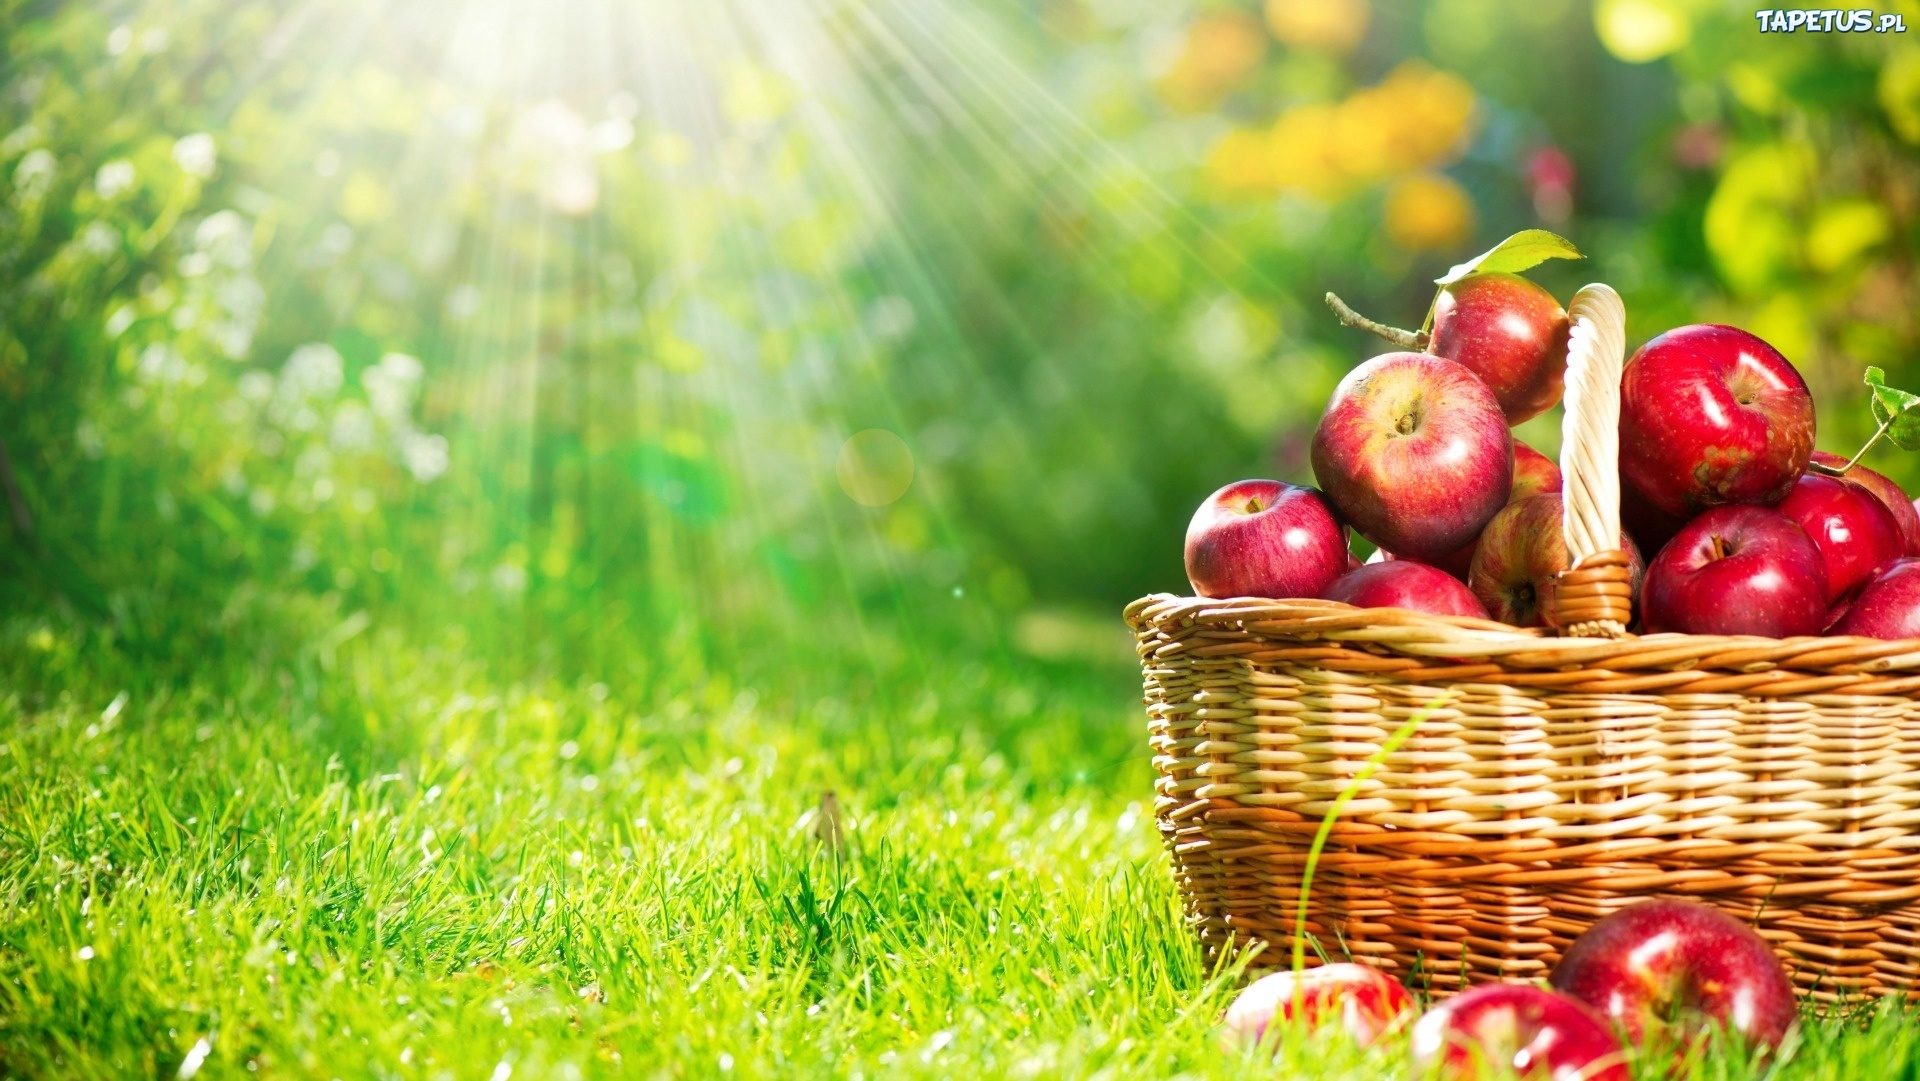 Apple Delice – 100% naturalny sok z owoców